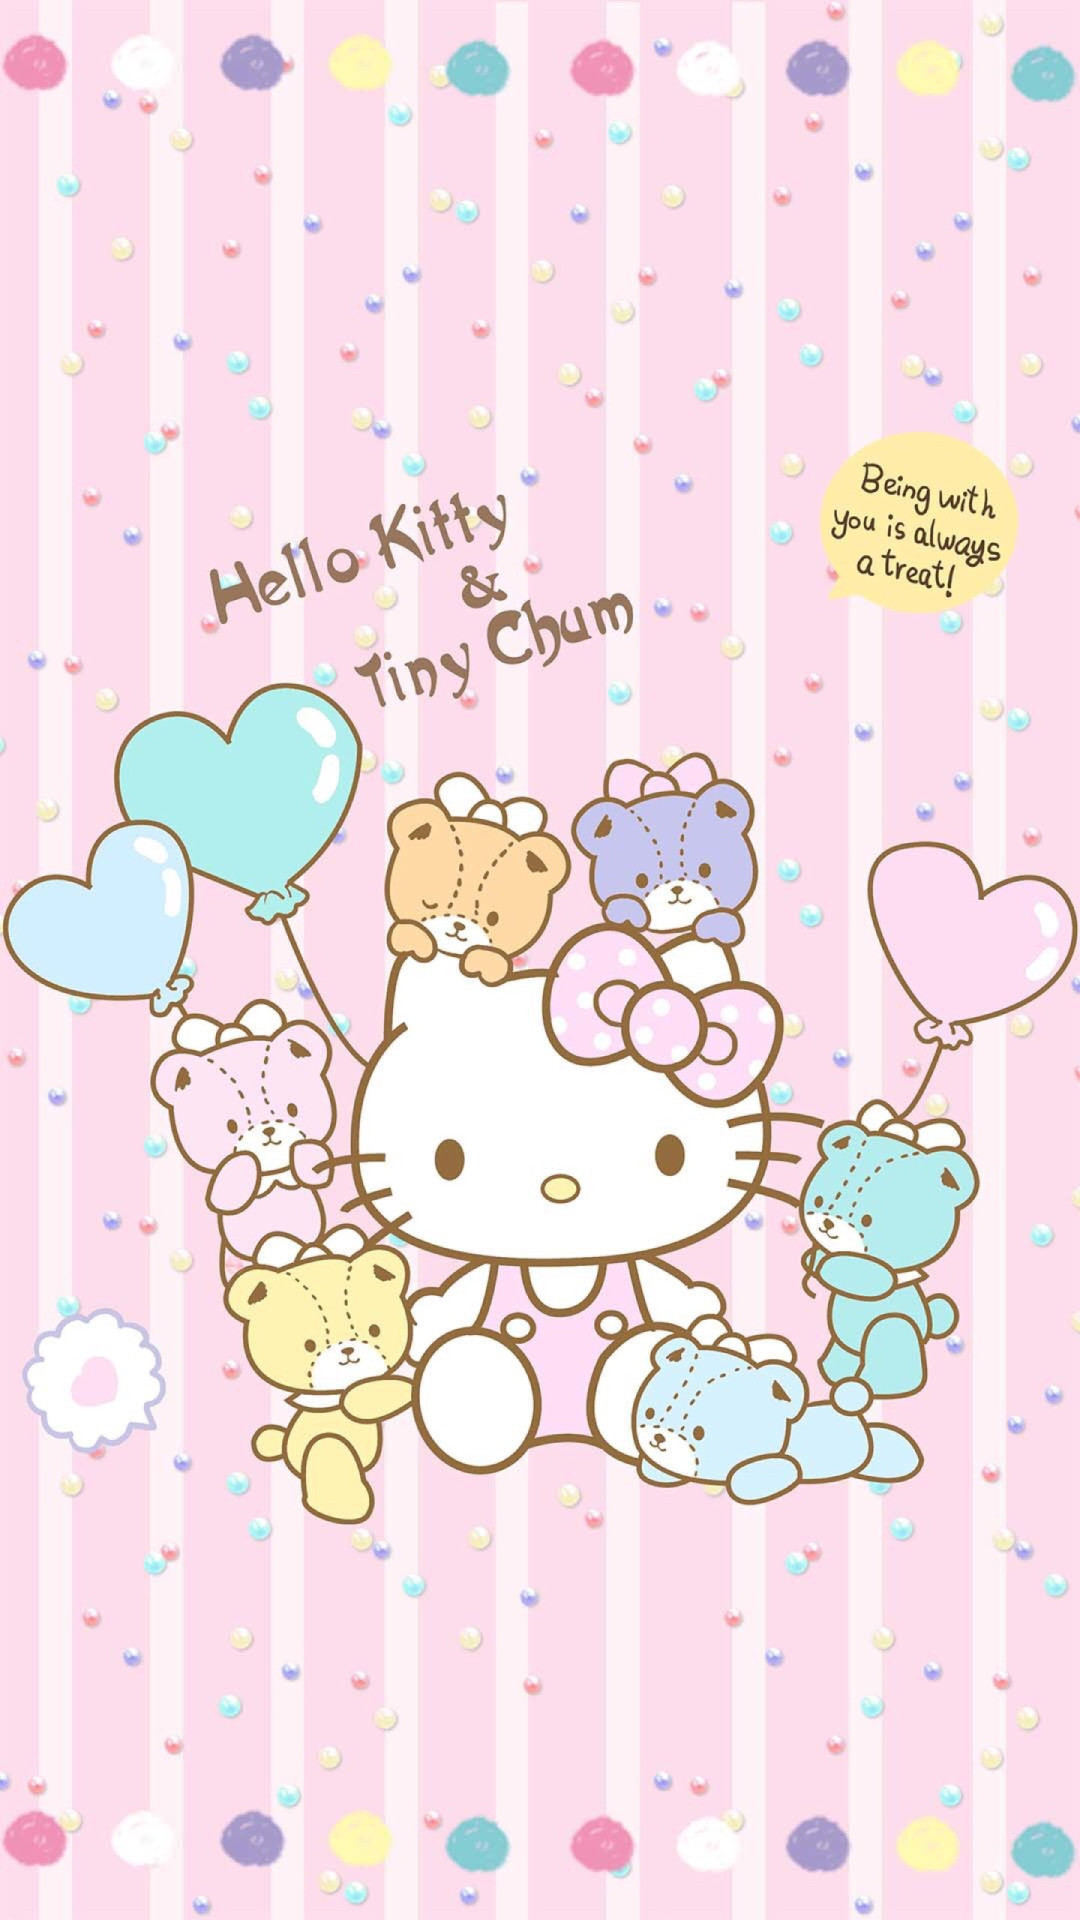 1080x1920 Hello Kitty & Tiny Chum